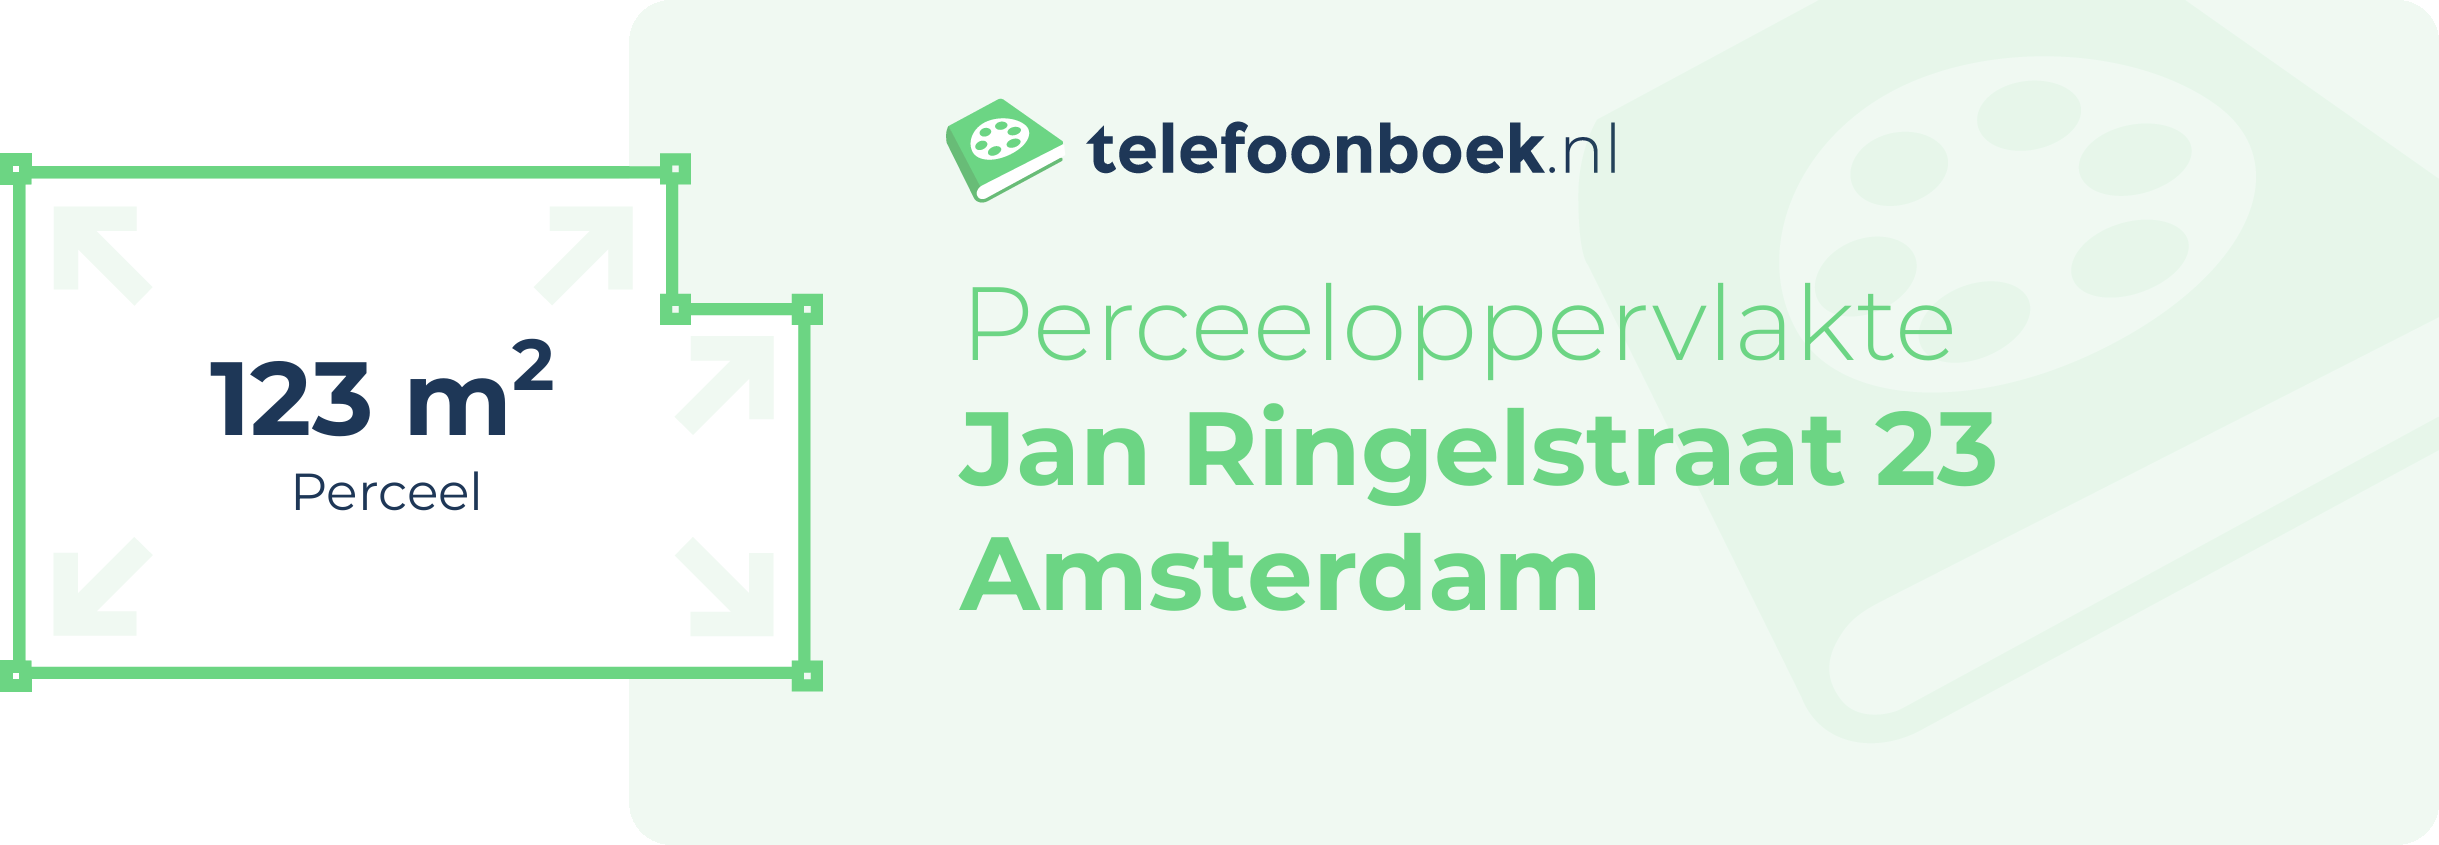 Perceeloppervlakte Jan Ringelstraat 23 Amsterdam